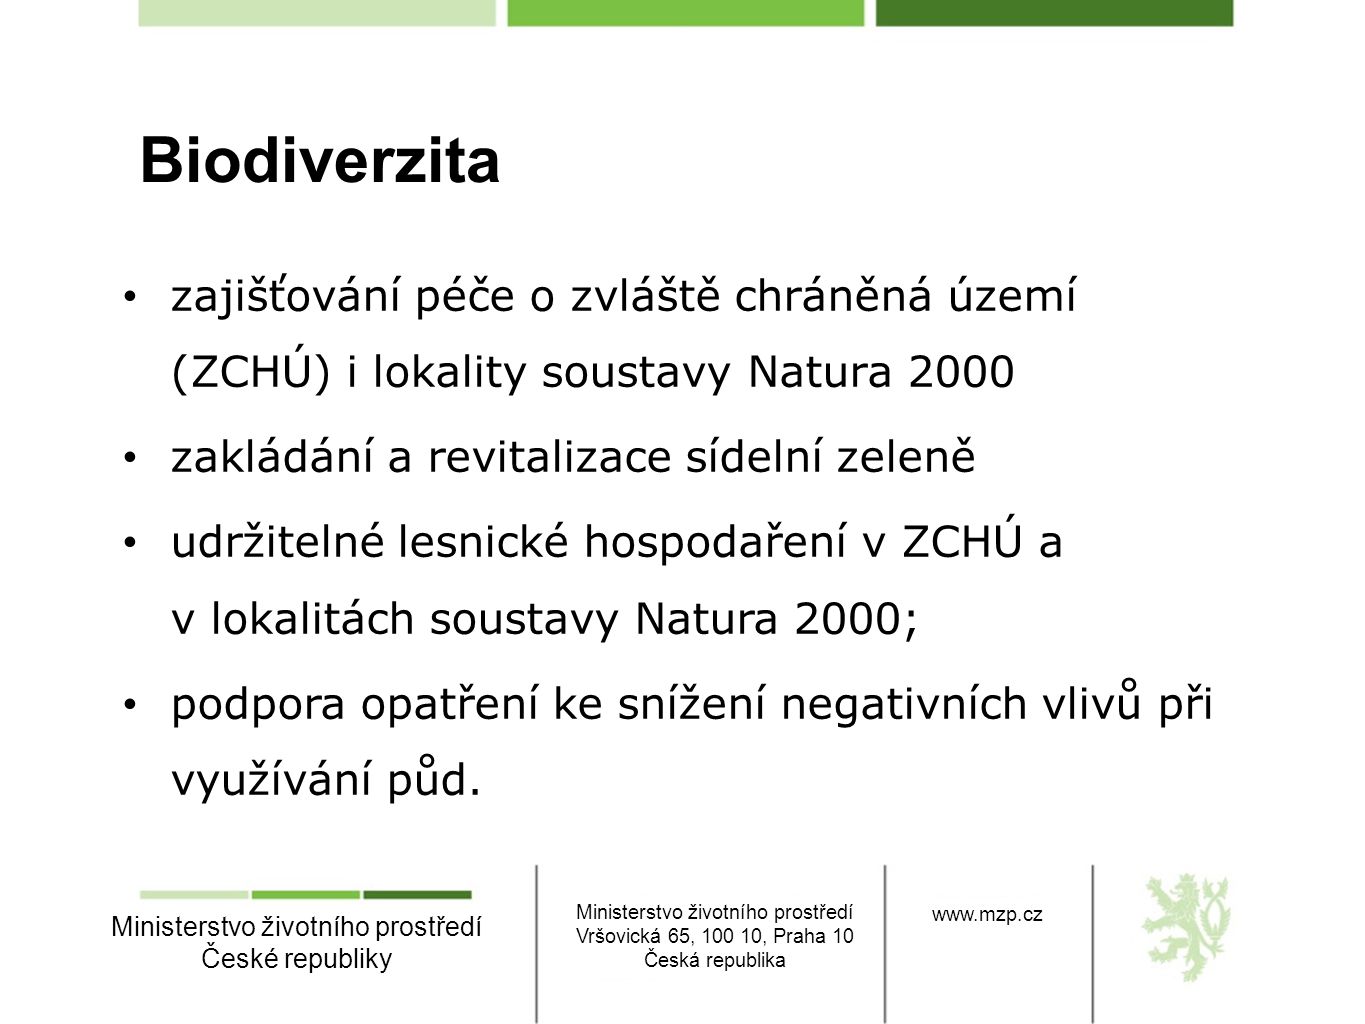 Biodiverzita zajišťování péče o zvláště chráněná území (ZCHÚ) i lokality soustavy Natura zakládání a revitalizace sídelní zeleně.